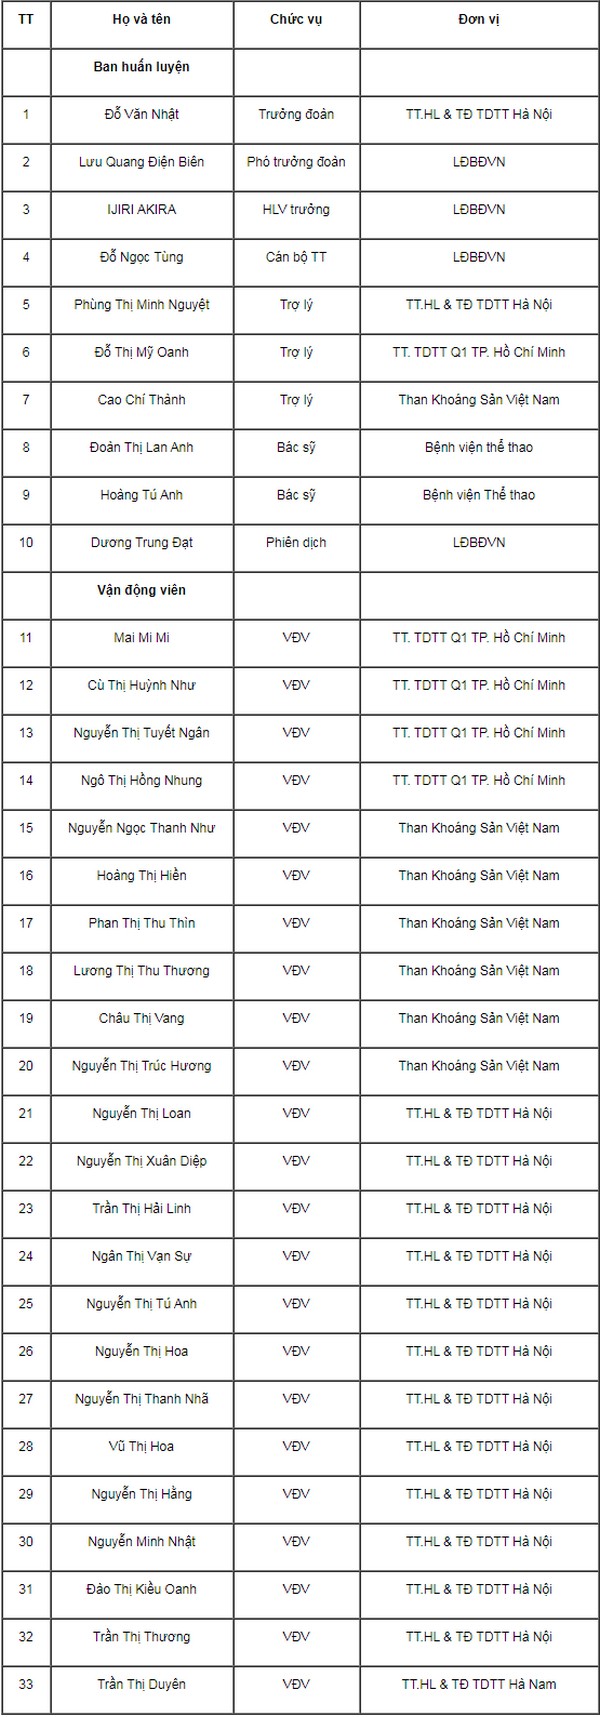 Đội tuyển U19 nữ Việt Nam chốt danh sách tham dự VCK U19 nữ châu Á 2019  - Ảnh 1.